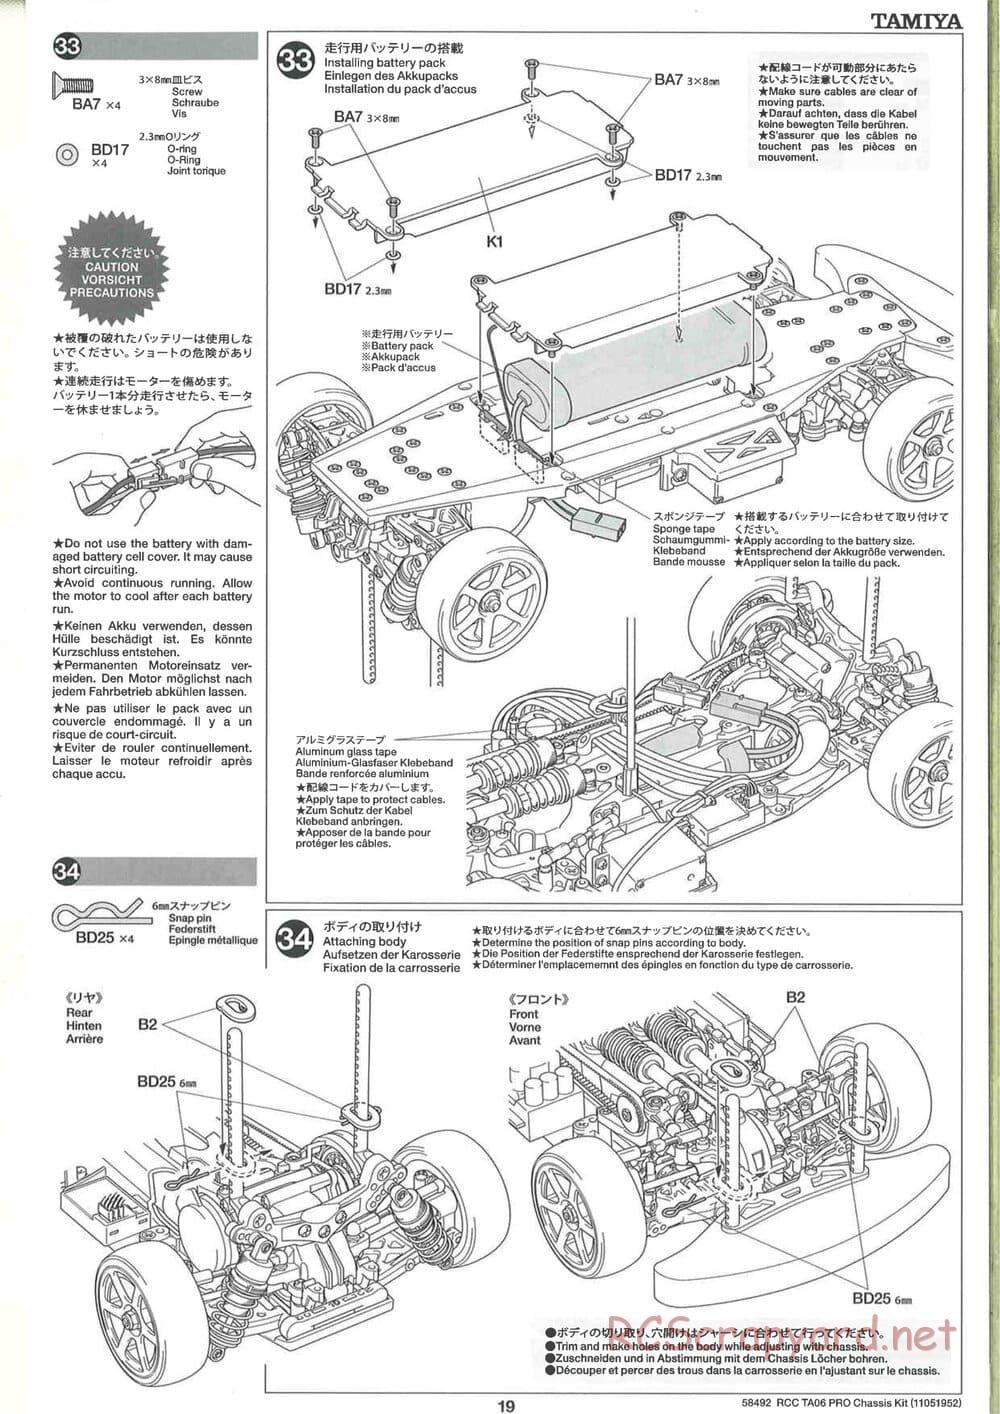 Tamiya - TA06 Pro Chassis - Manual - Page 19